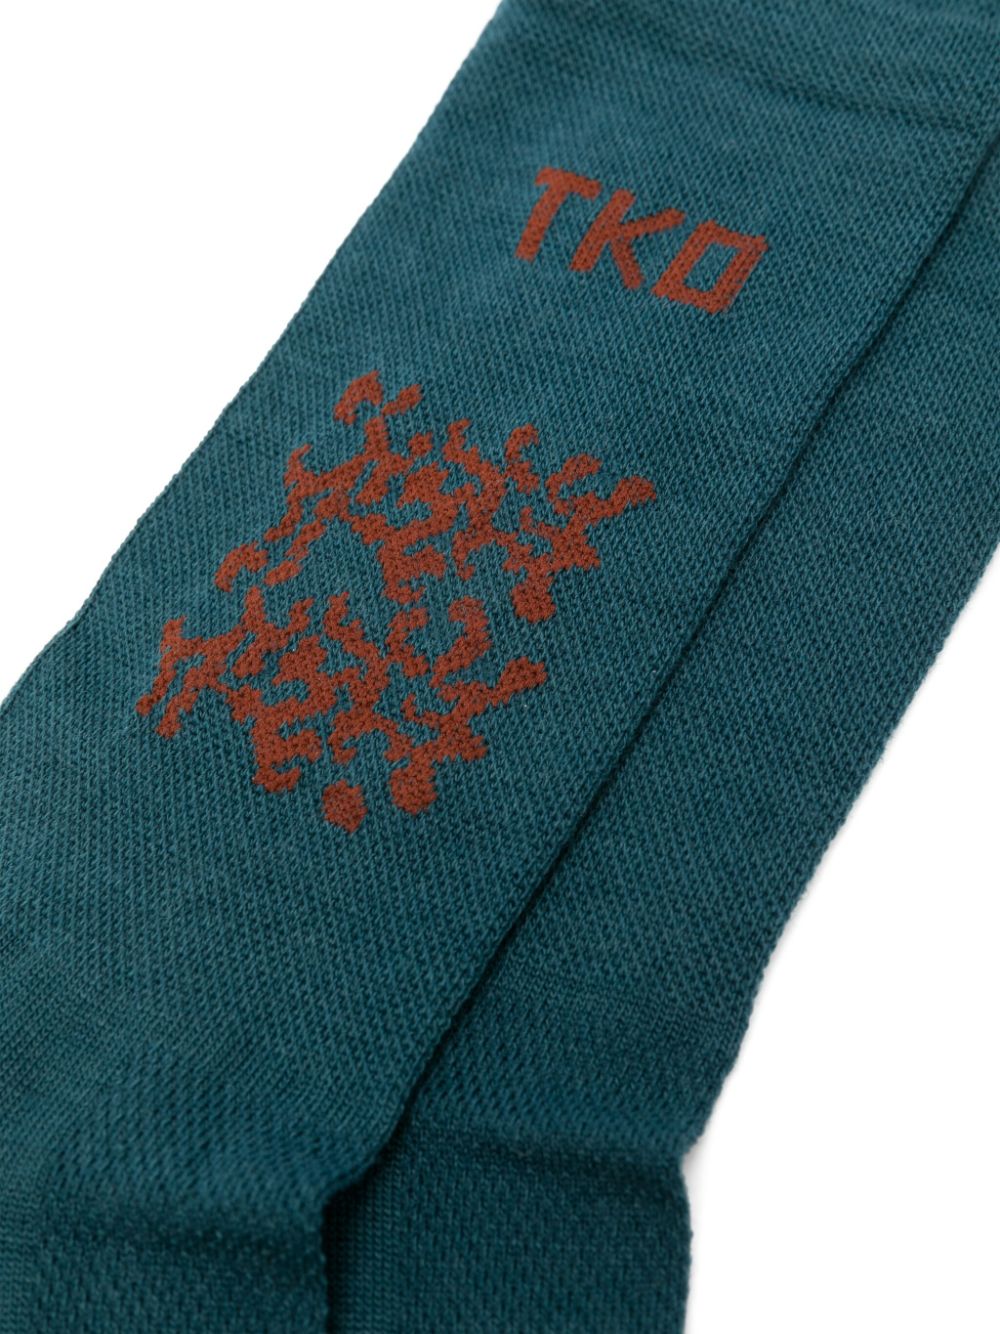 TKO-motif ribbed socks<BR/><BR/><BR/>